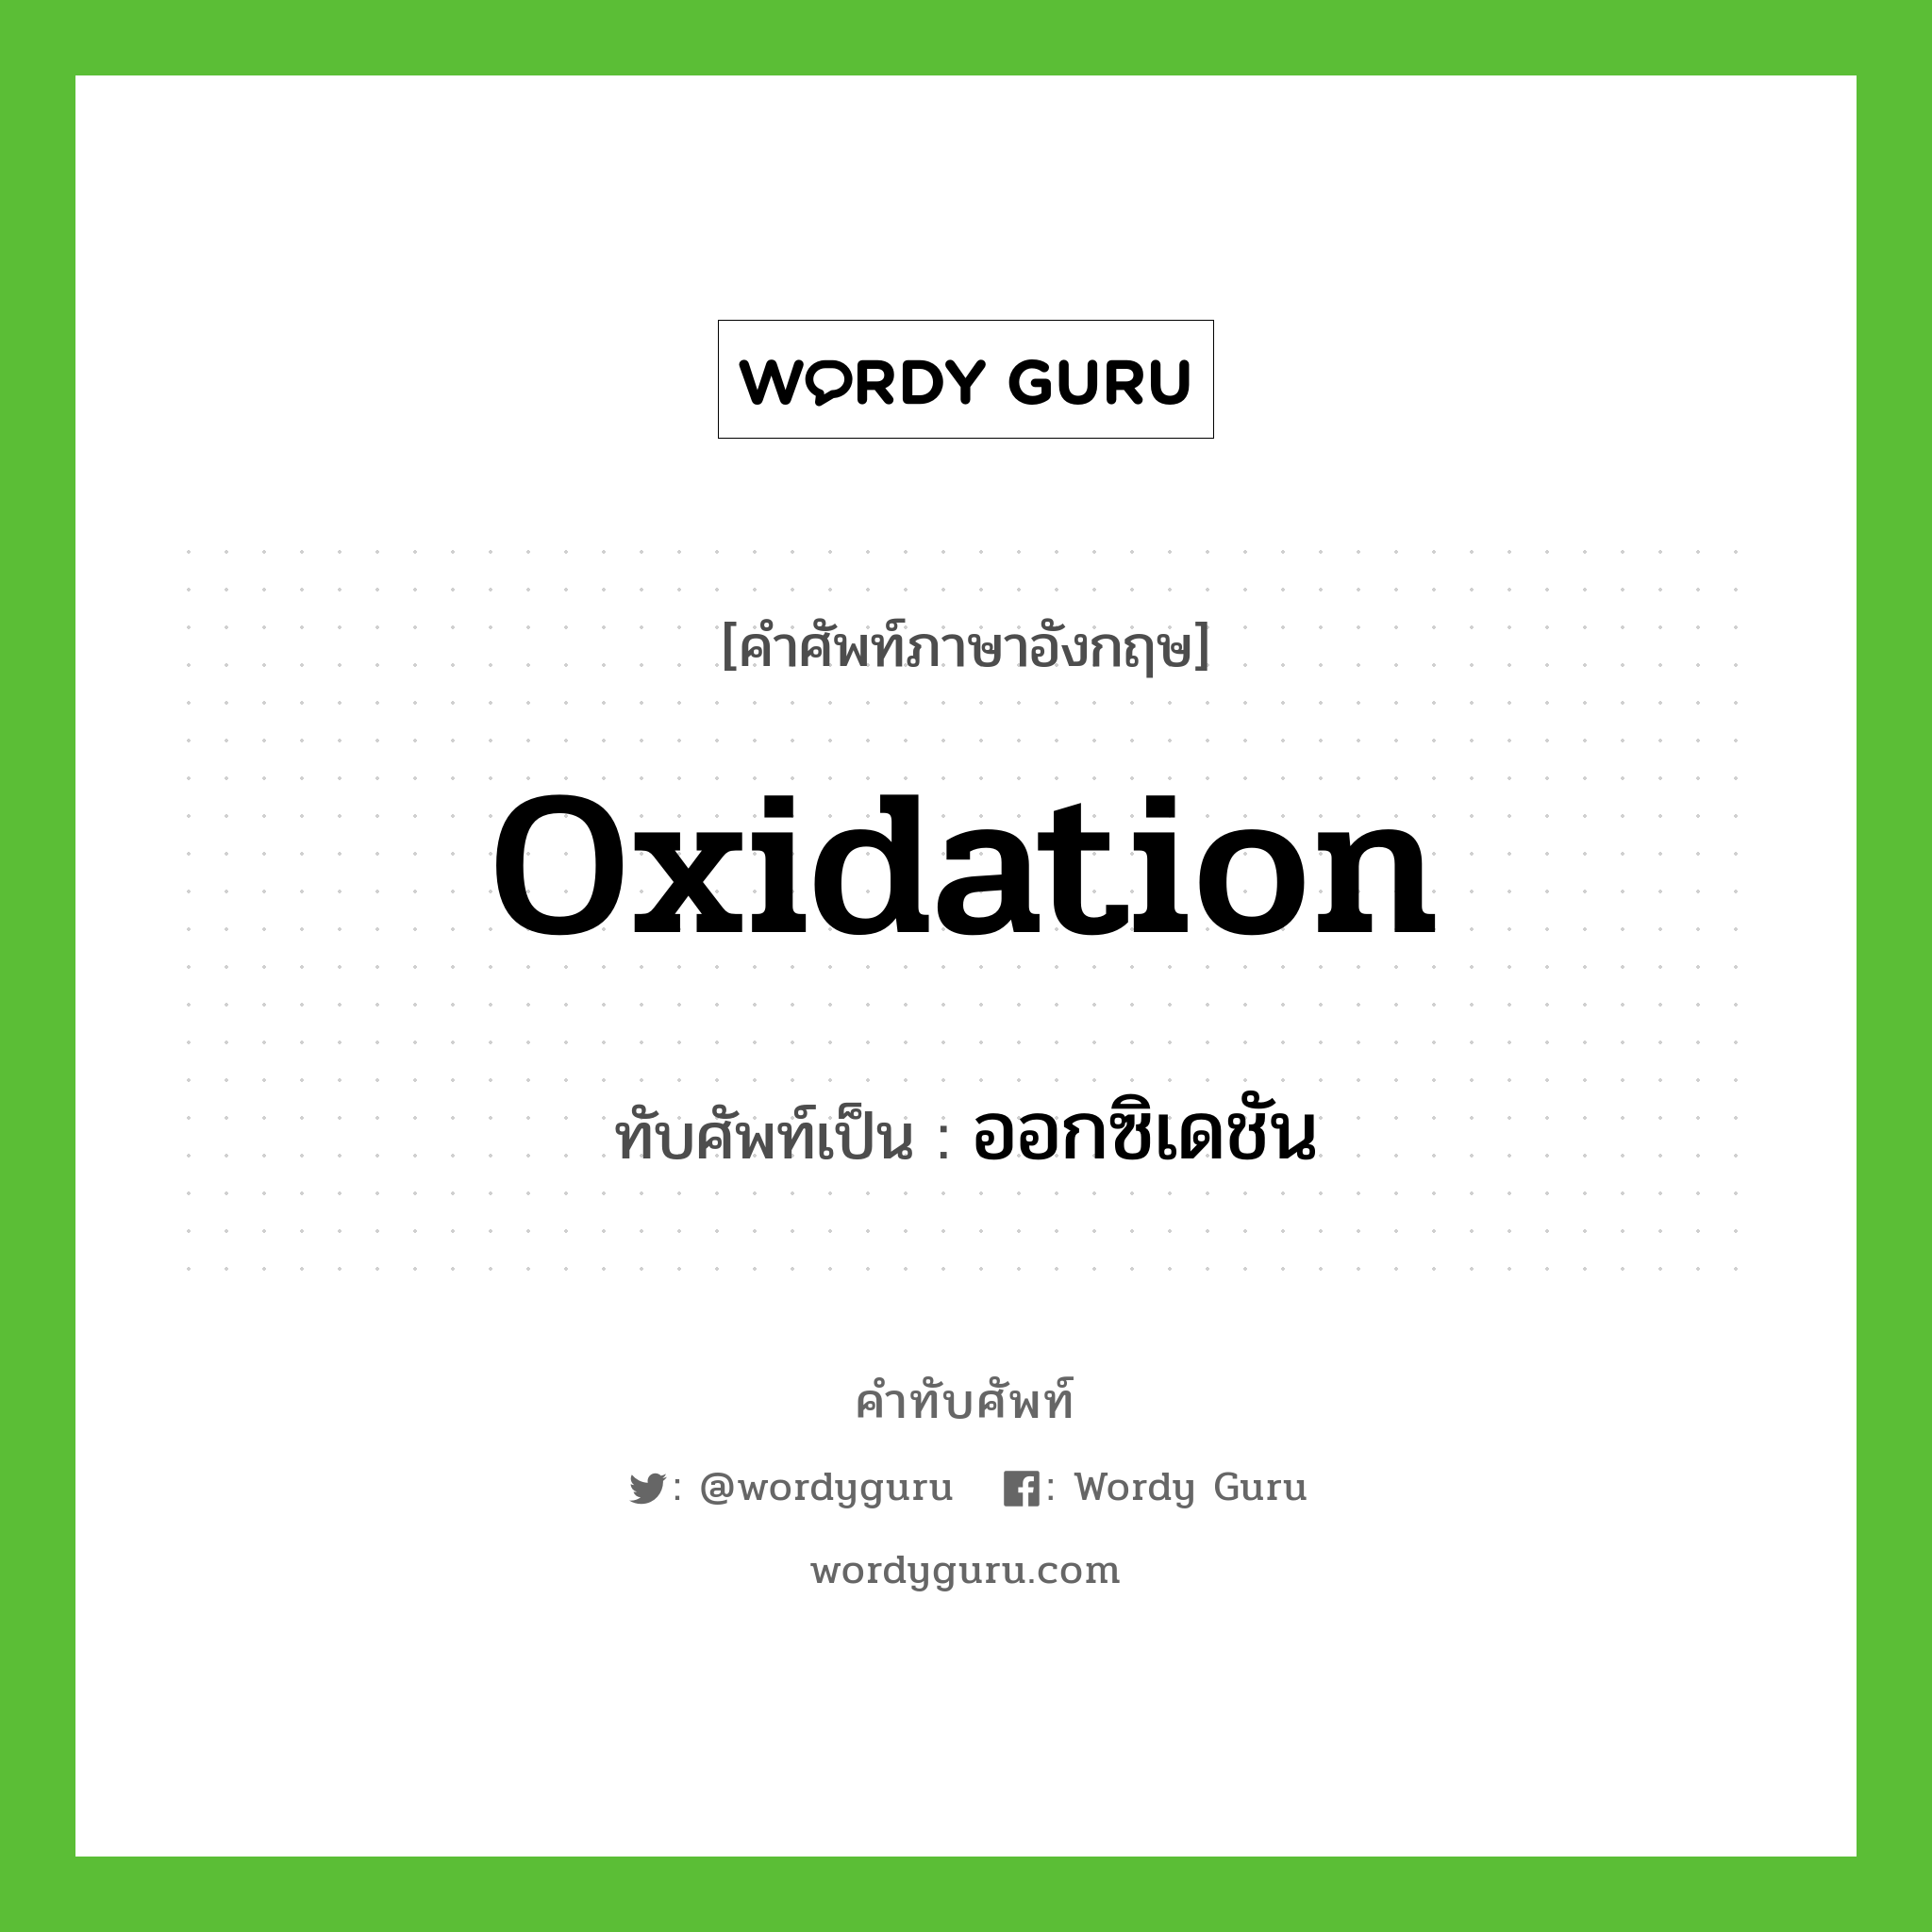 oxidation เขียนเป็นคำไทยว่าอะไร?, คำศัพท์ภาษาอังกฤษ oxidation ทับศัพท์เป็น ออกซิเดชัน